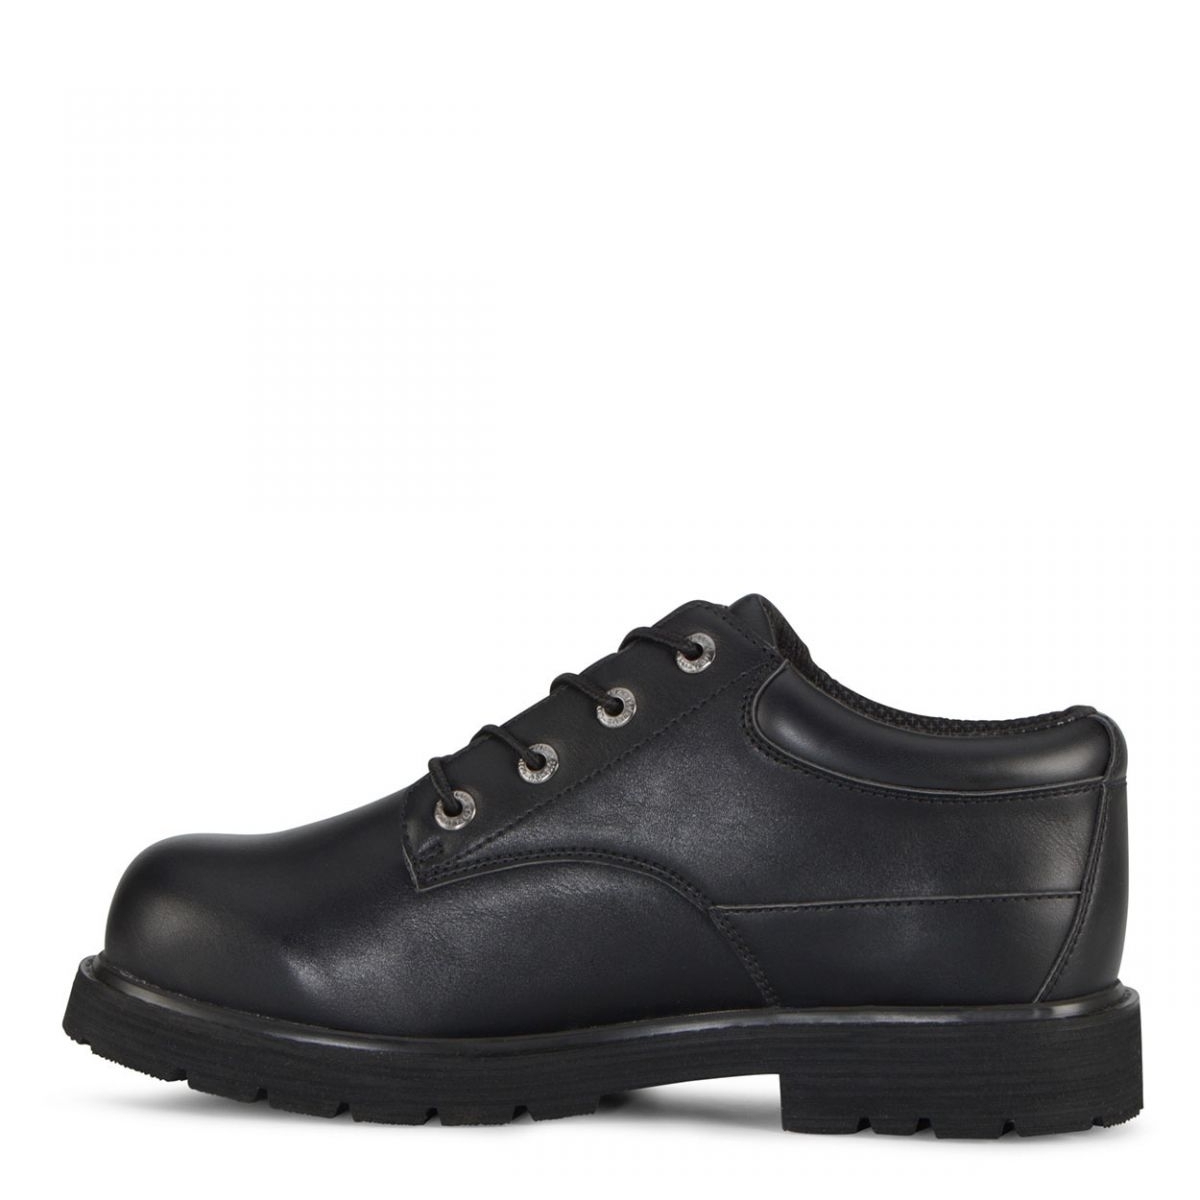 Lugz Men's Drifter Lo Lx Oxford Boot Black - MDRLXLV-001 BLACK - BLACK, 11.5